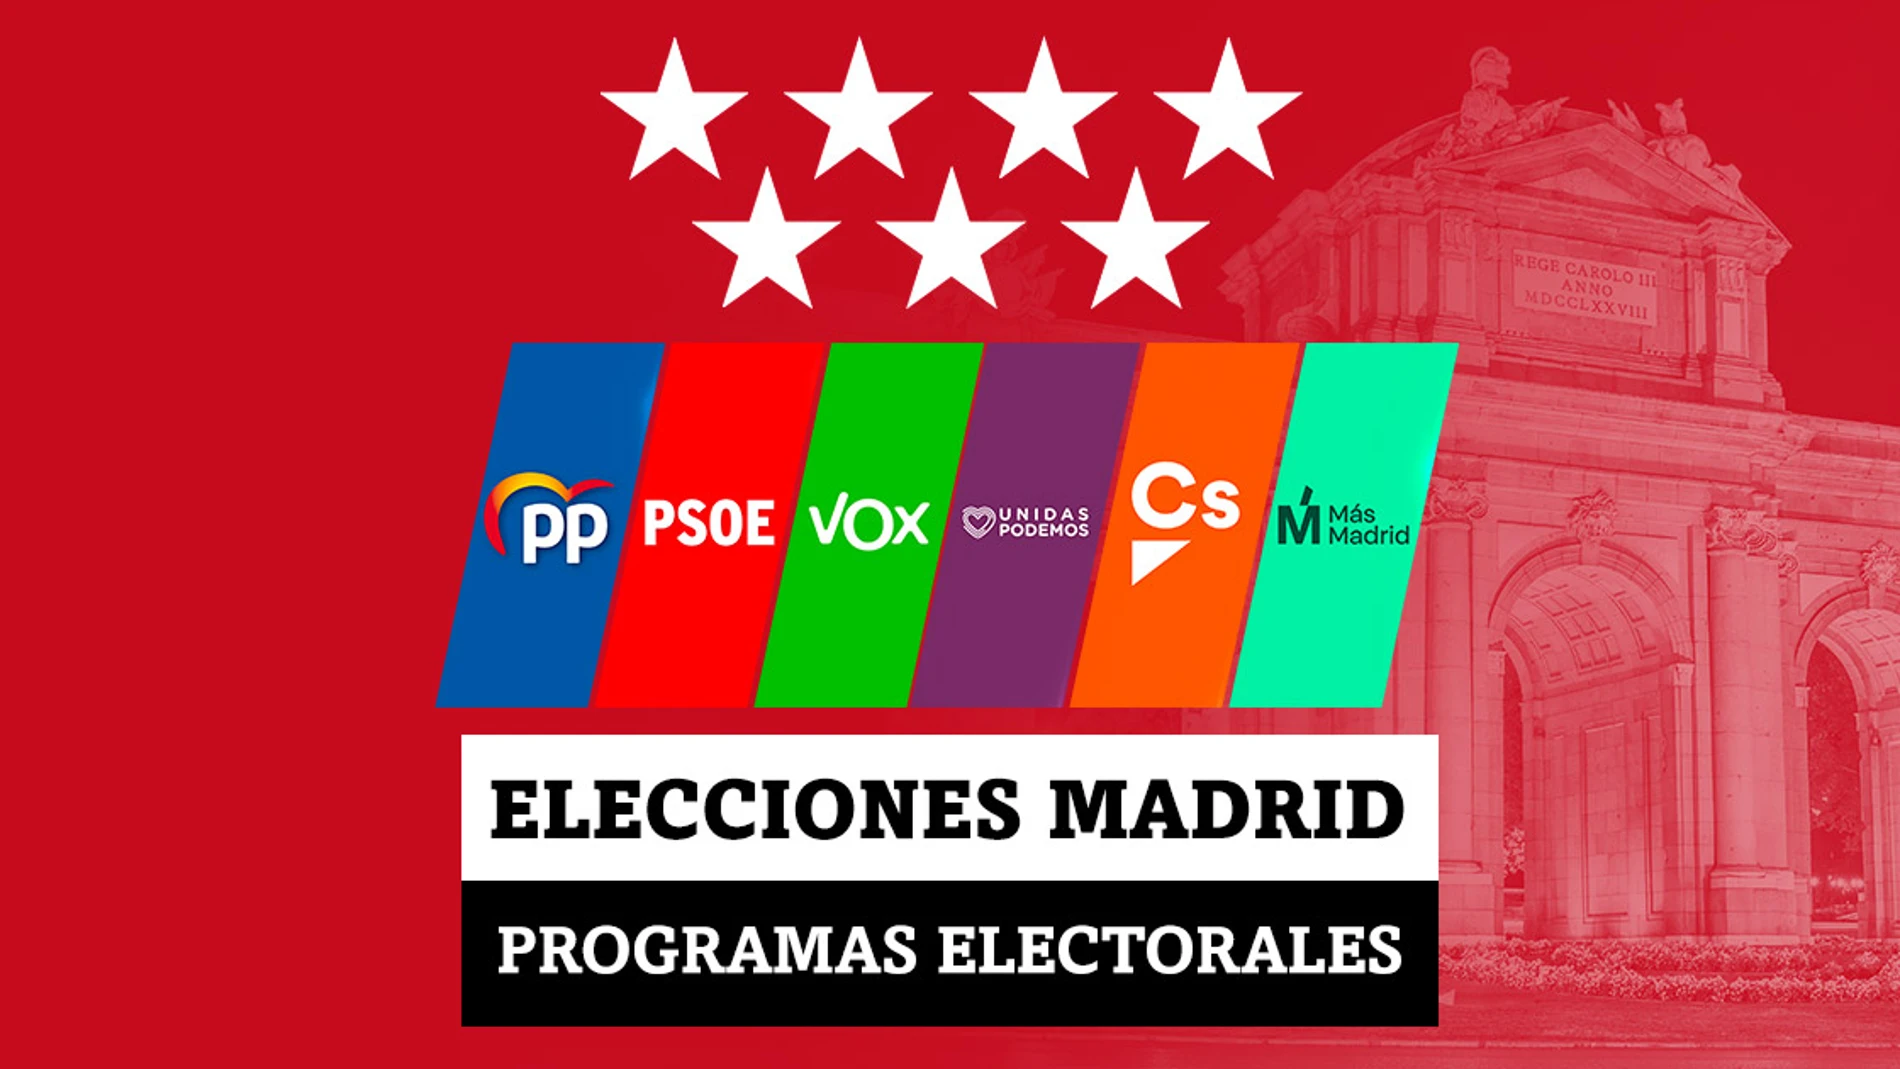 Estos son los programas electorales de PSOE, PP, Más Madrid, Vox, Podemos y Ciudadanos en las elecciones en la Comunidad de Madrid